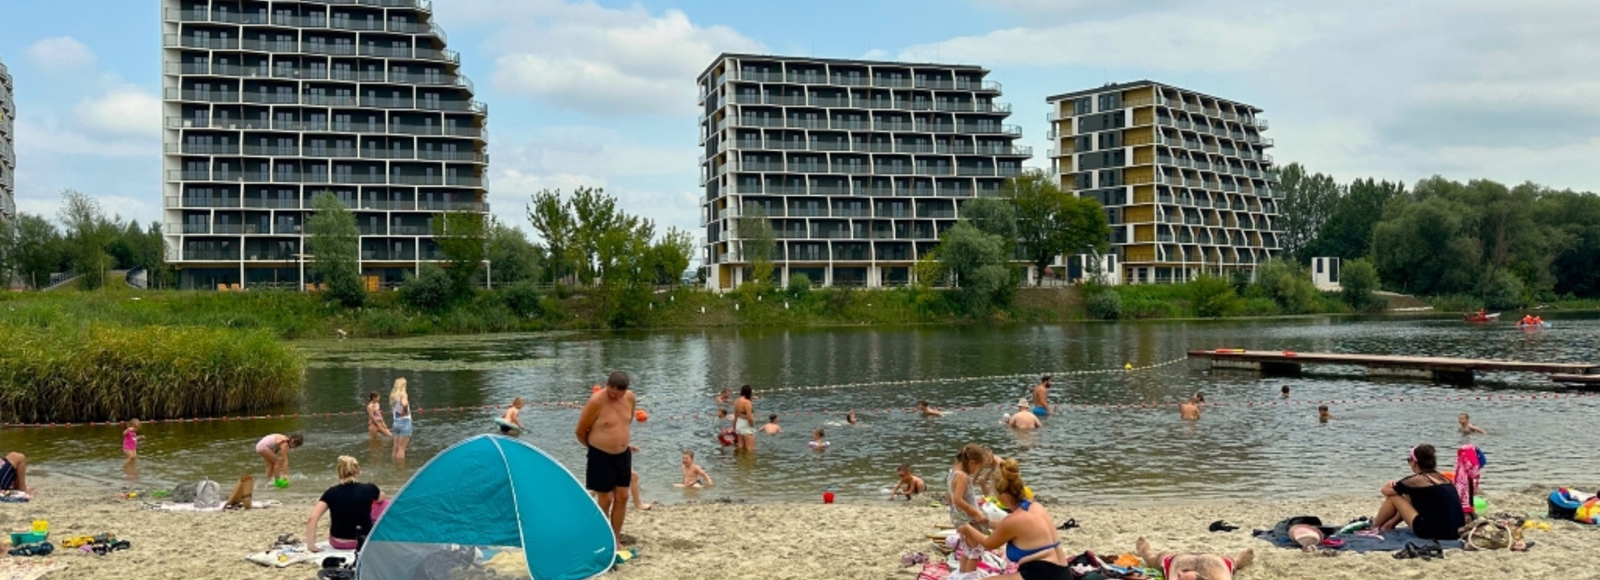 Miejskie kąpielisko przy ul. Kwiatkowskiego ponownie otwarte fot. Archiwum RESinet.pl 